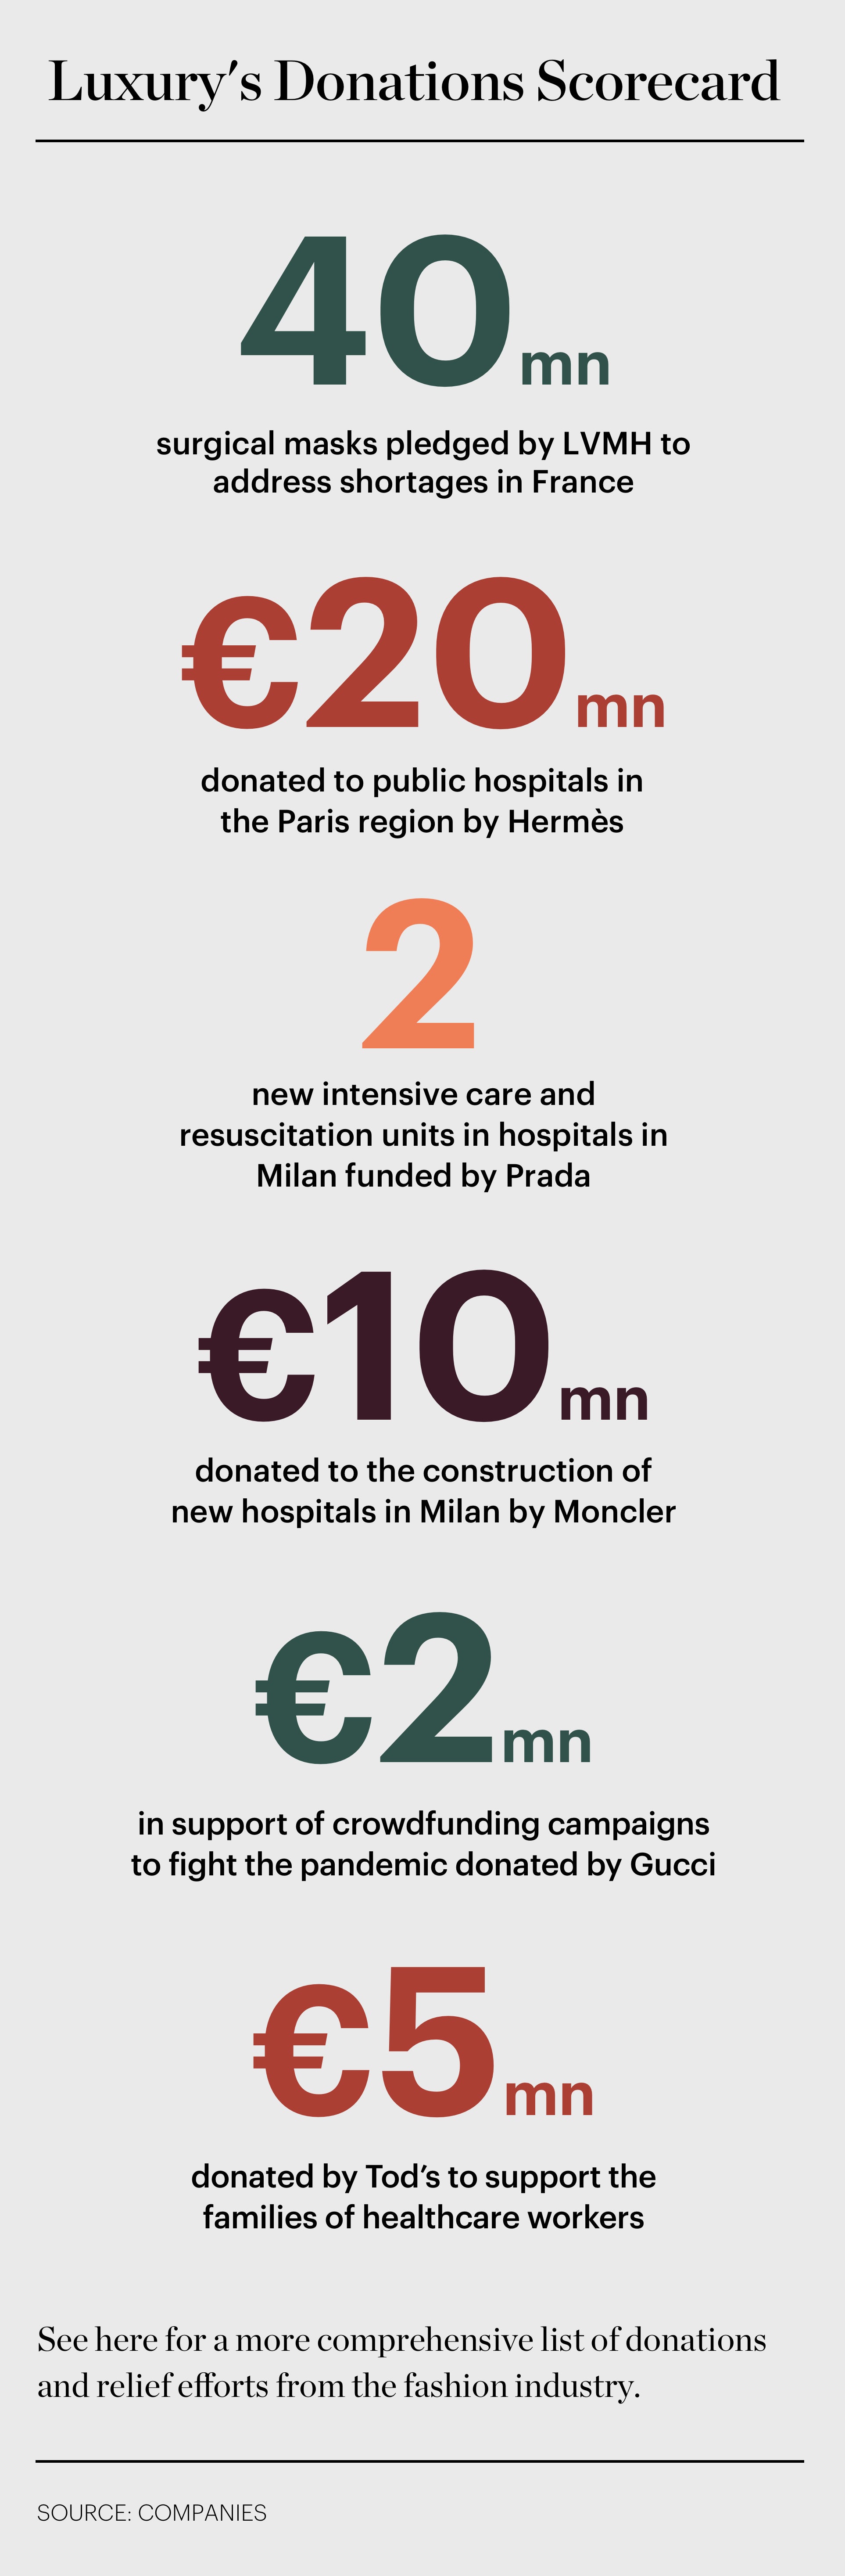 Covid-19, Kering donates 2 milion euros to hospitals, LVMH